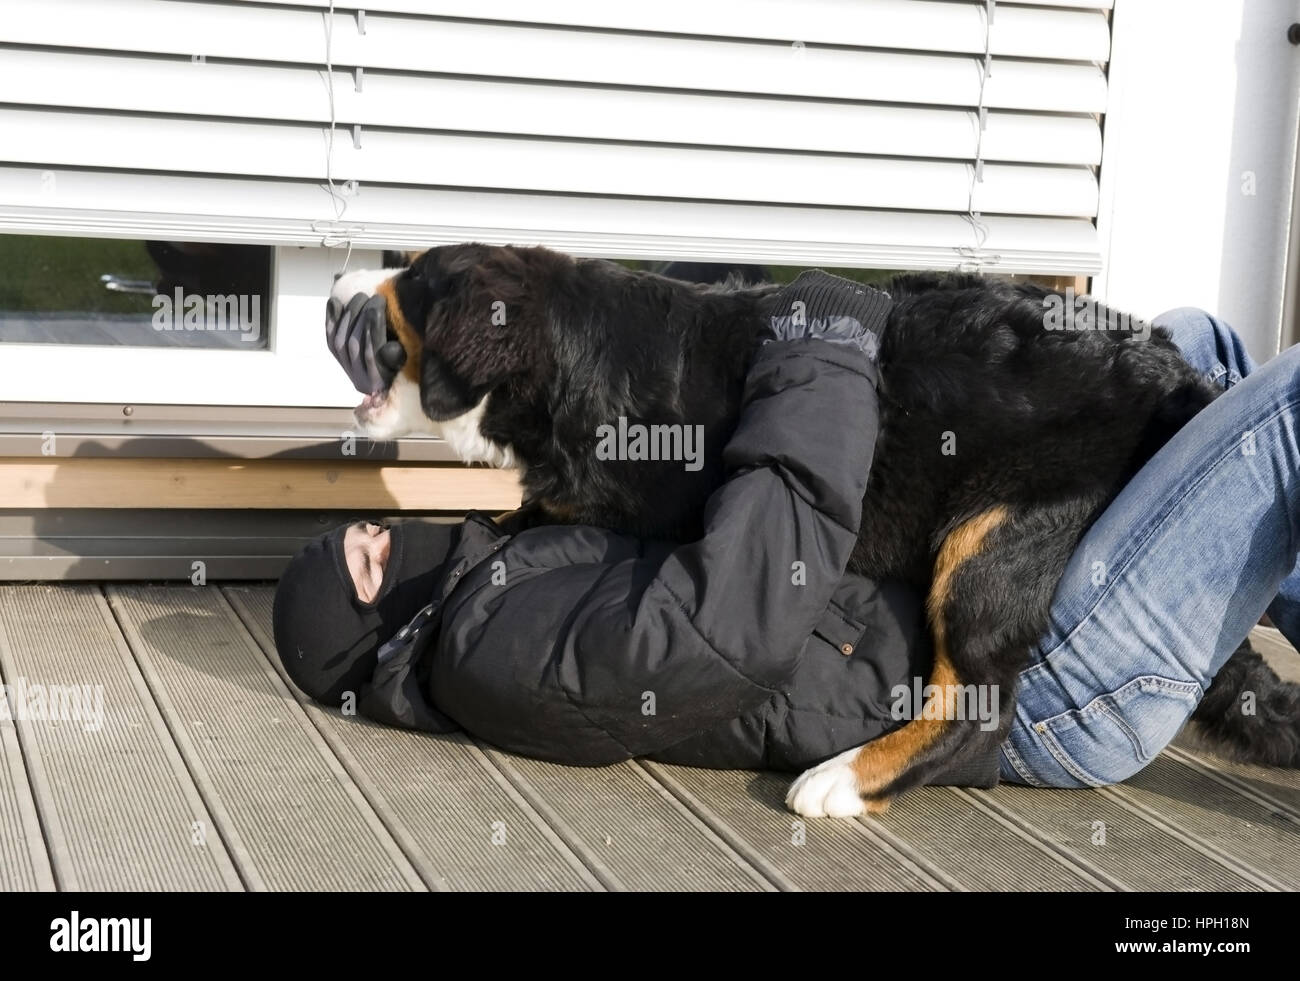 Model released , Wachhund ueberwaeltigt Einbrecher - watchdog overwhelms a housebreaker Stock Photo